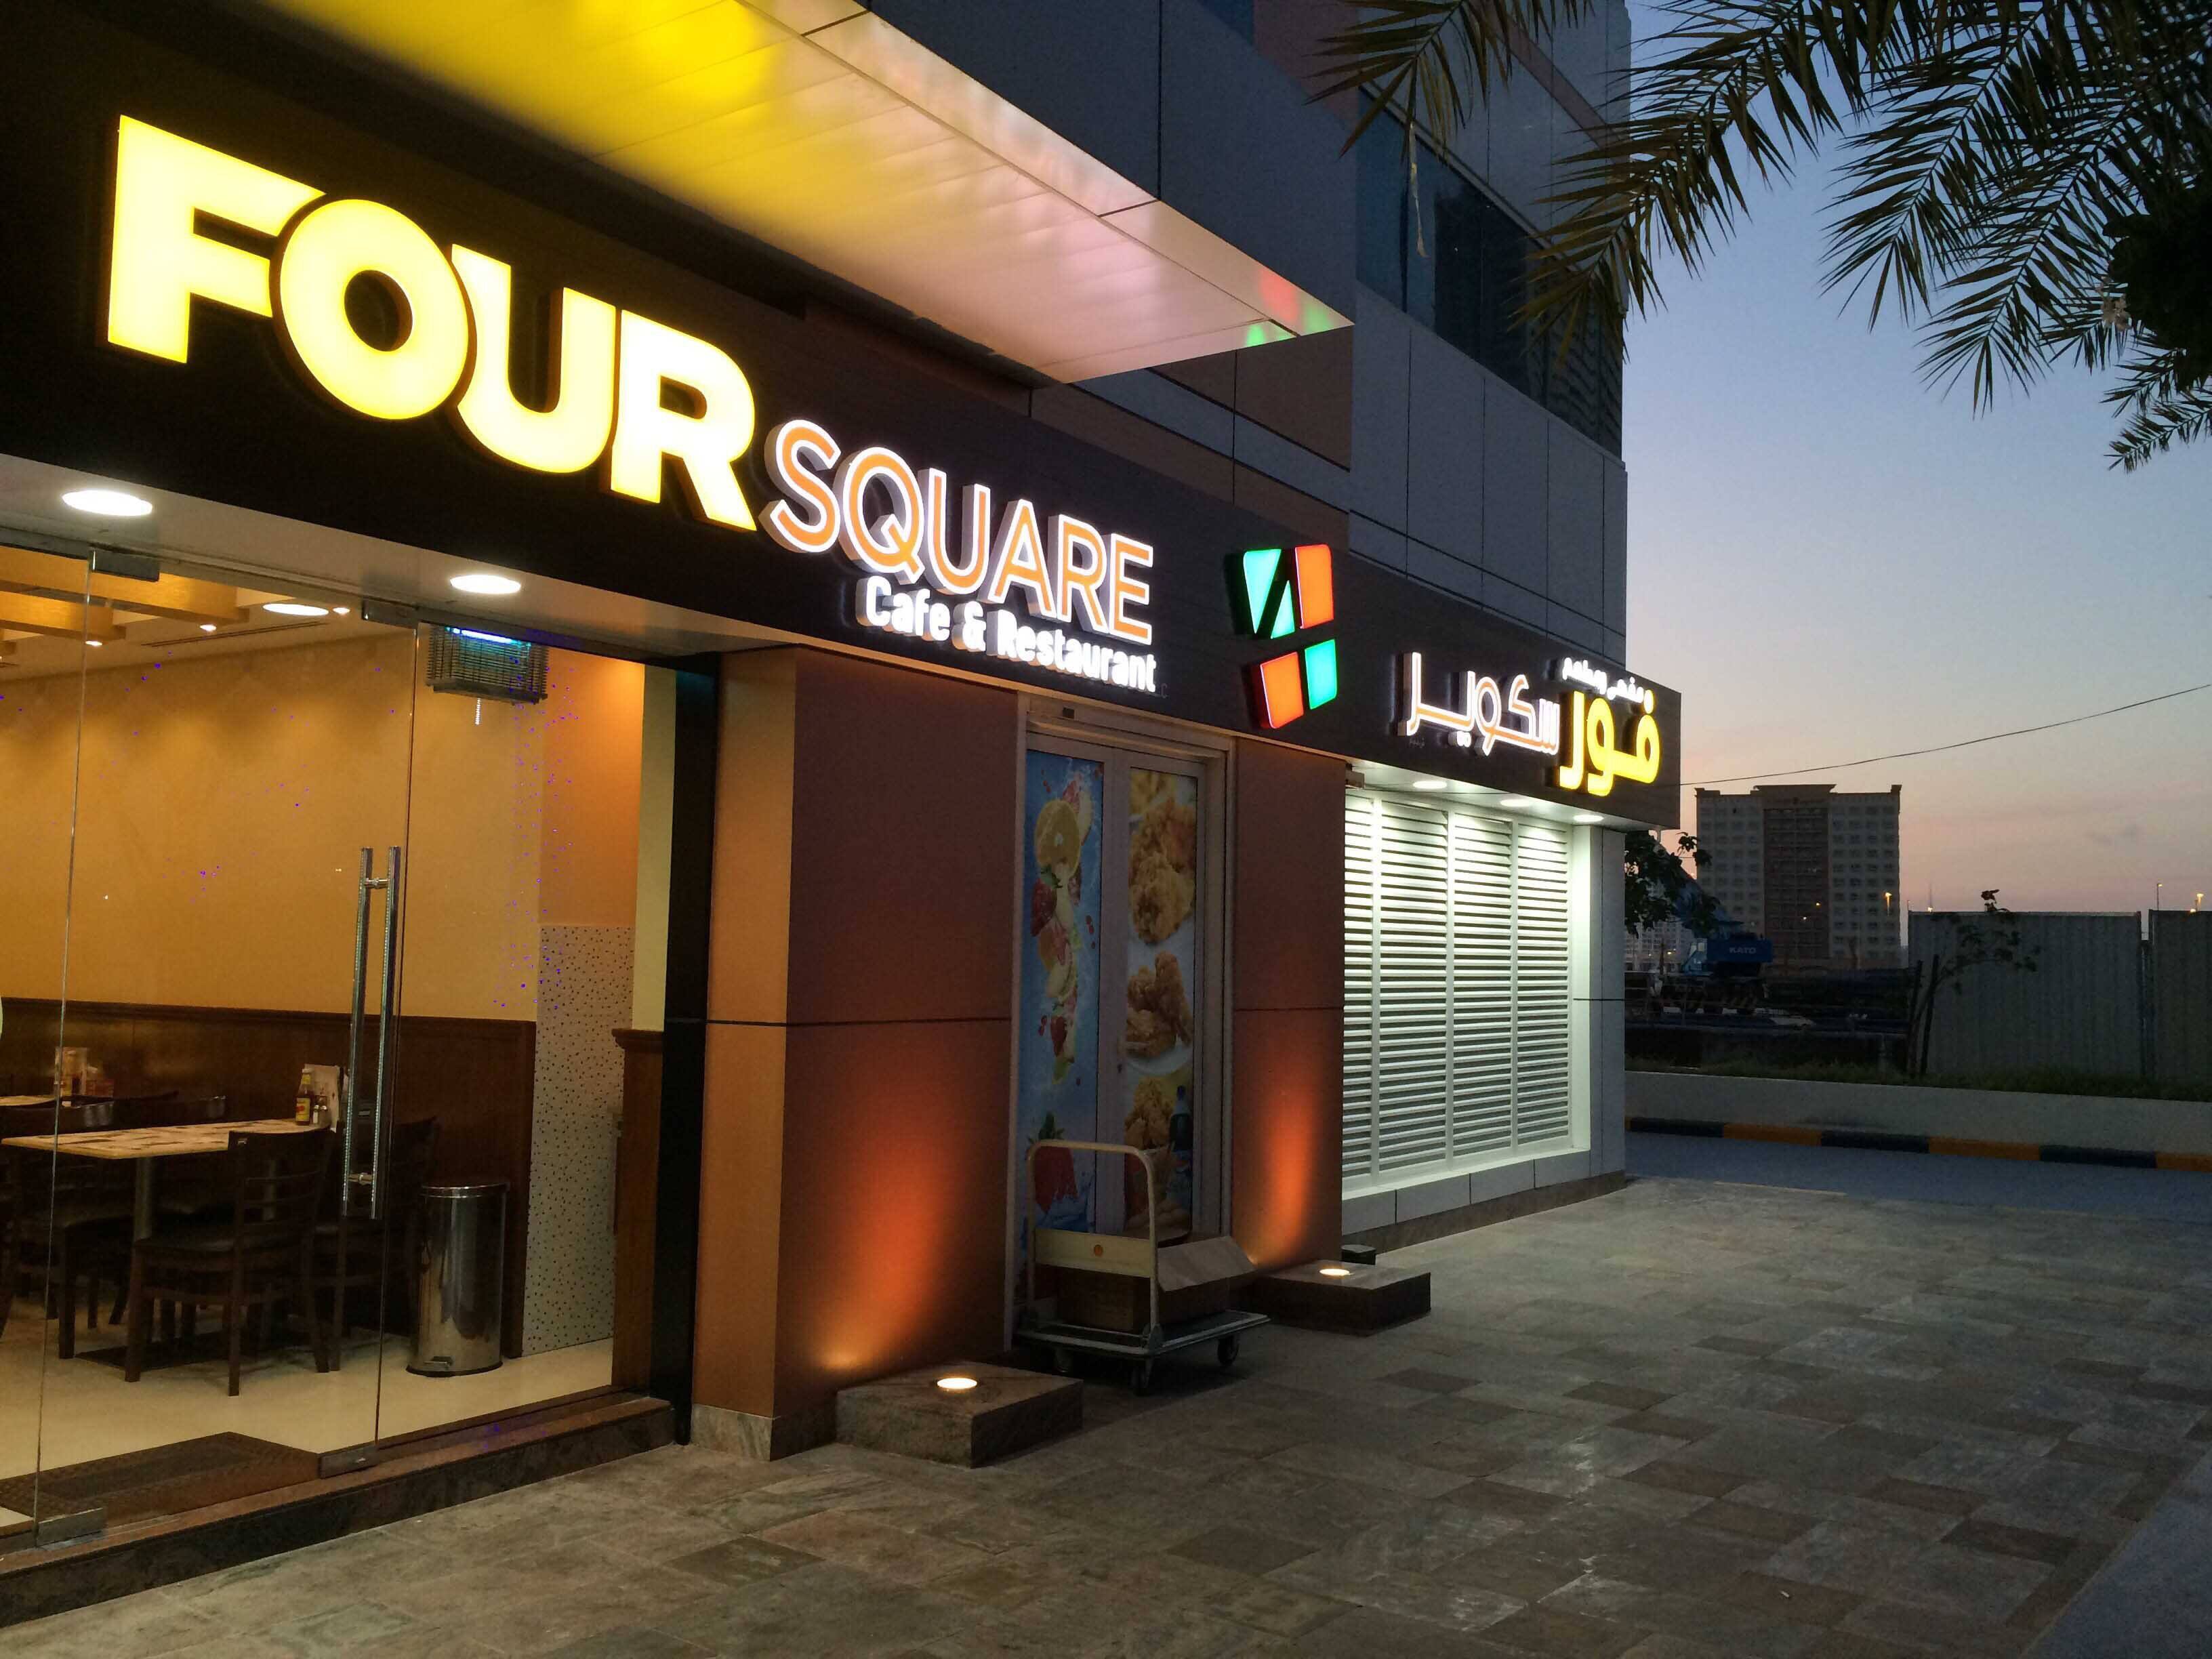 Four Square Cafe & Restaurant, The Villas, Dubai